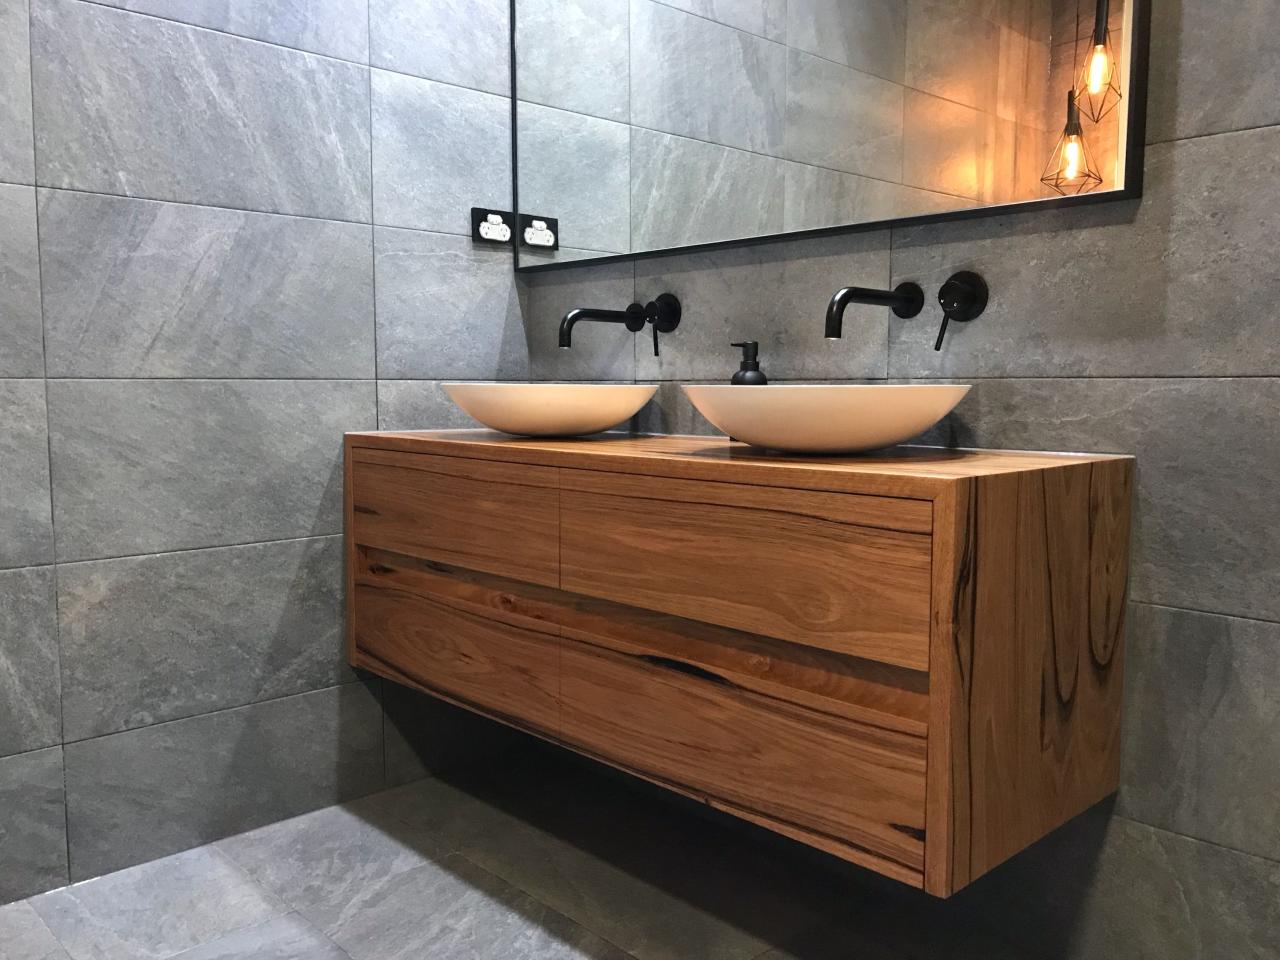 Vanity bathroom 36 grey wood solid single vincent hm vanities inch charcoal wmsq cg conceptbaths buy